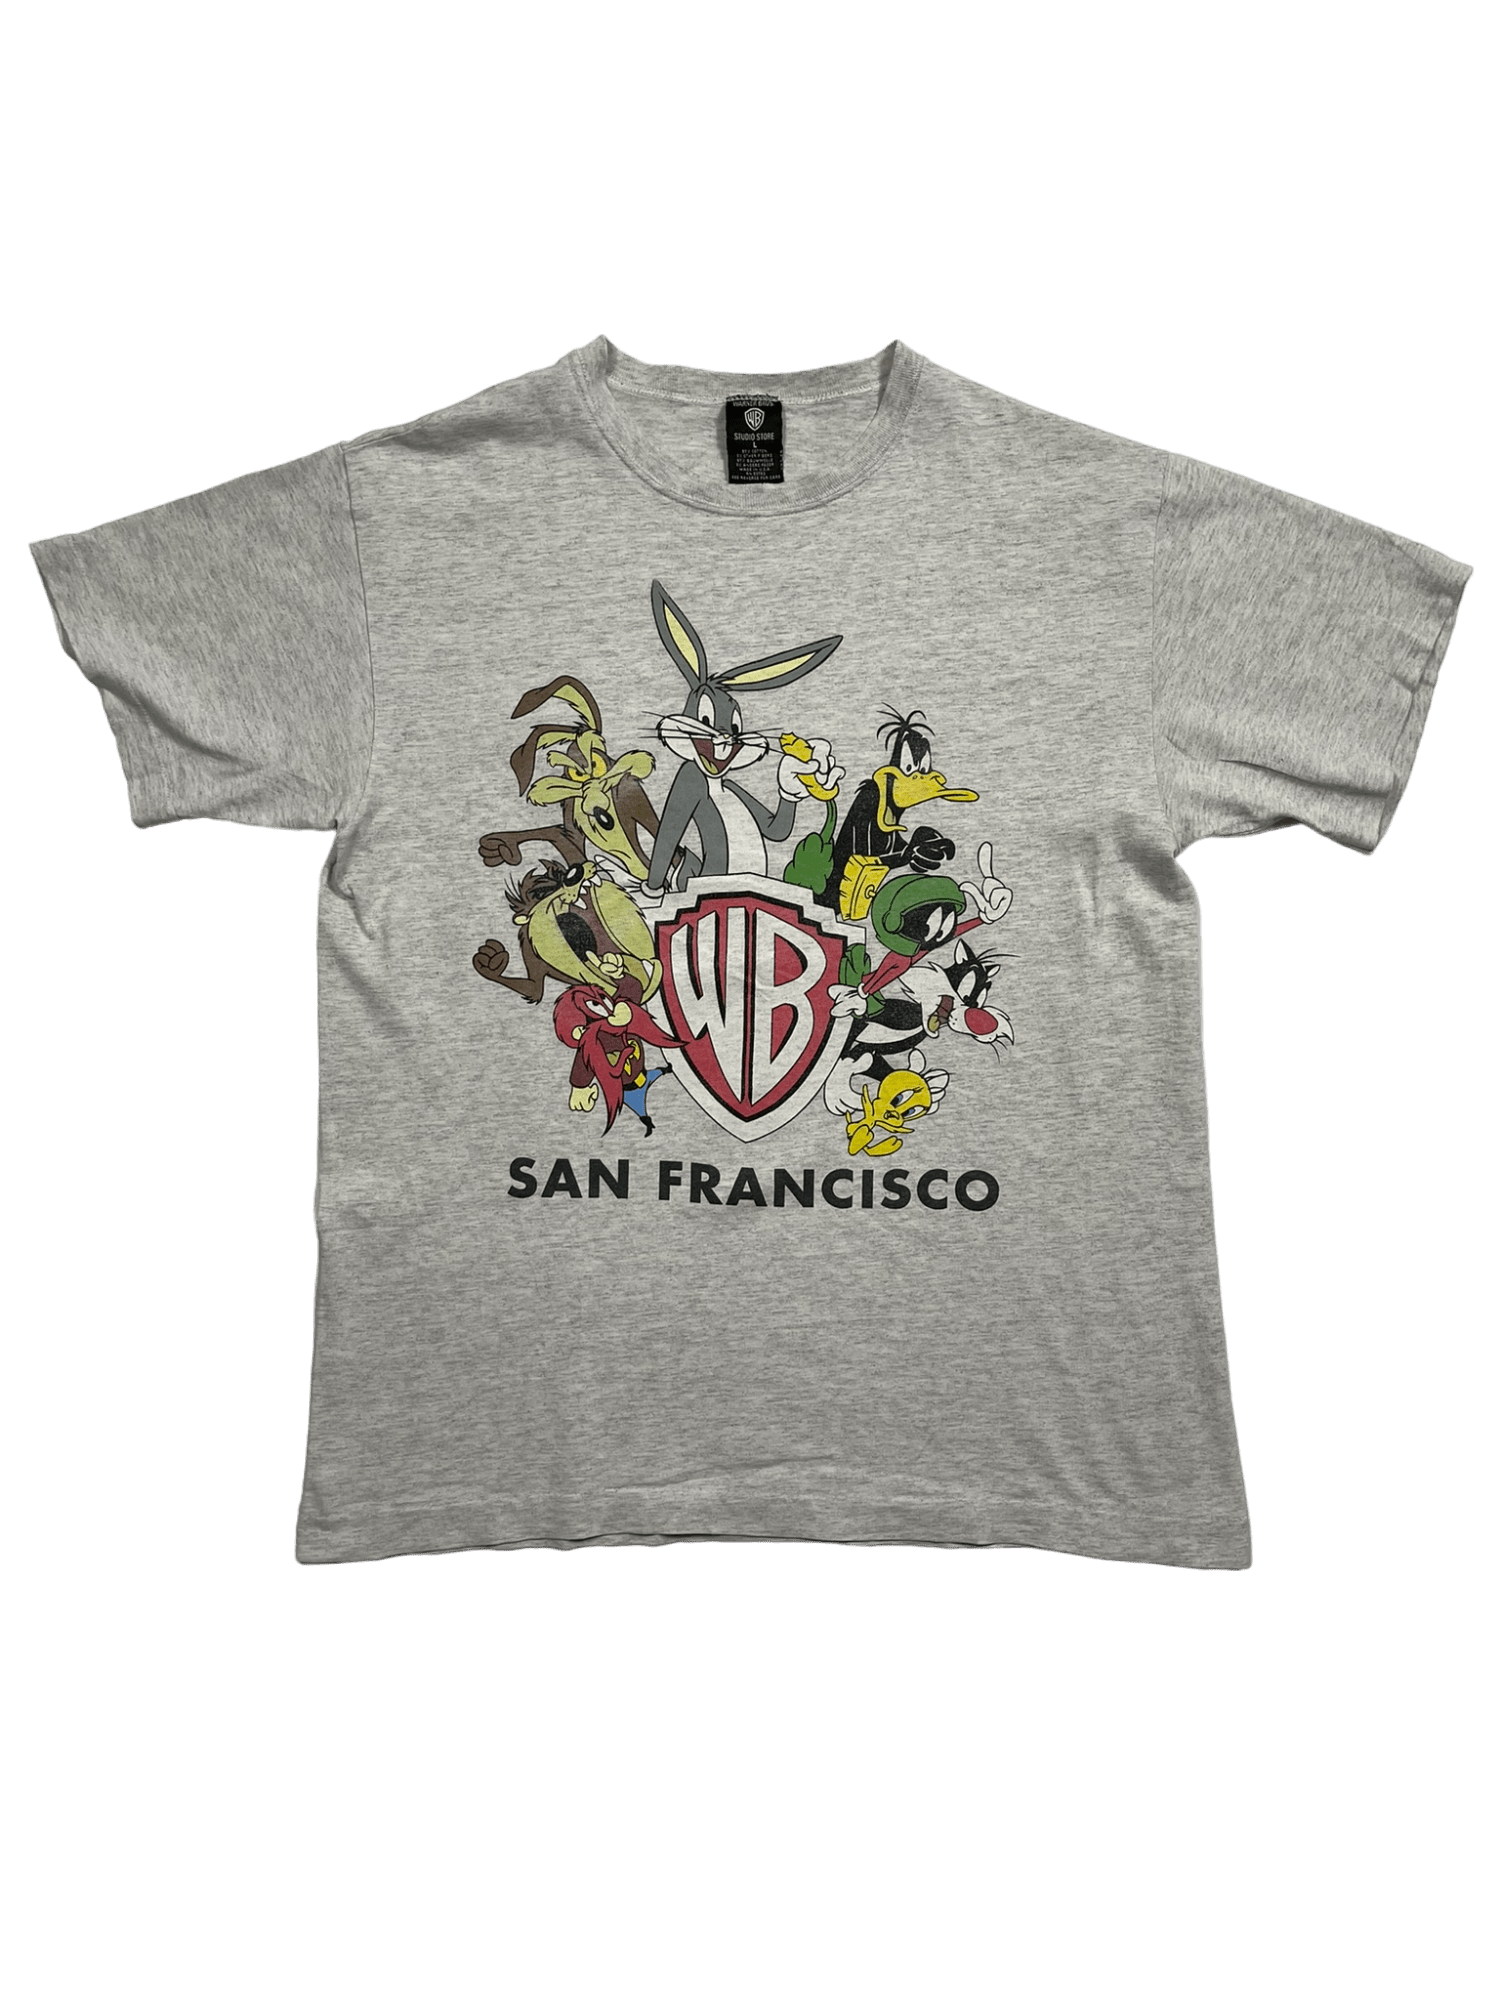 The Vintage Racks T-Shirt Warner Brothers San Francisco - L